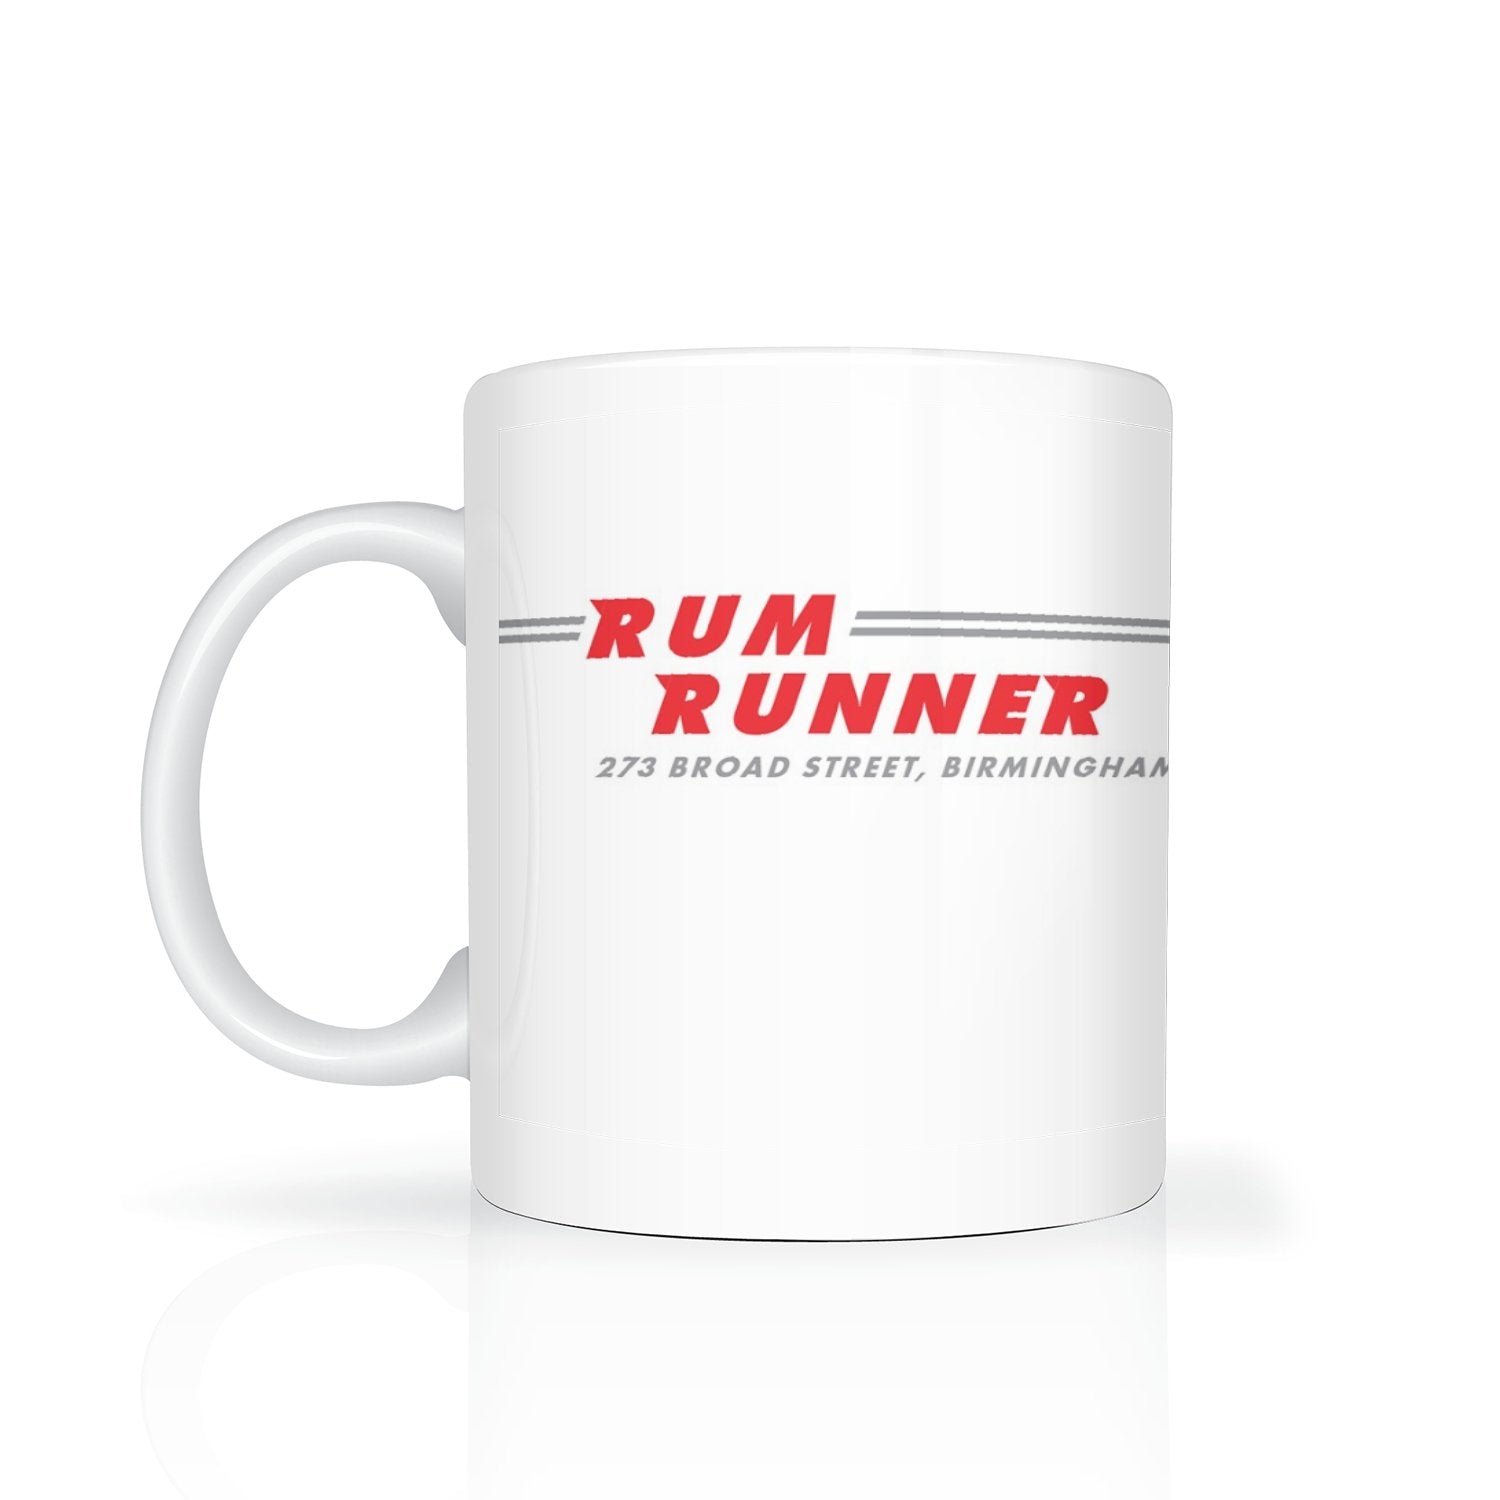 Rum Runner mug - Dirty Stop Outs